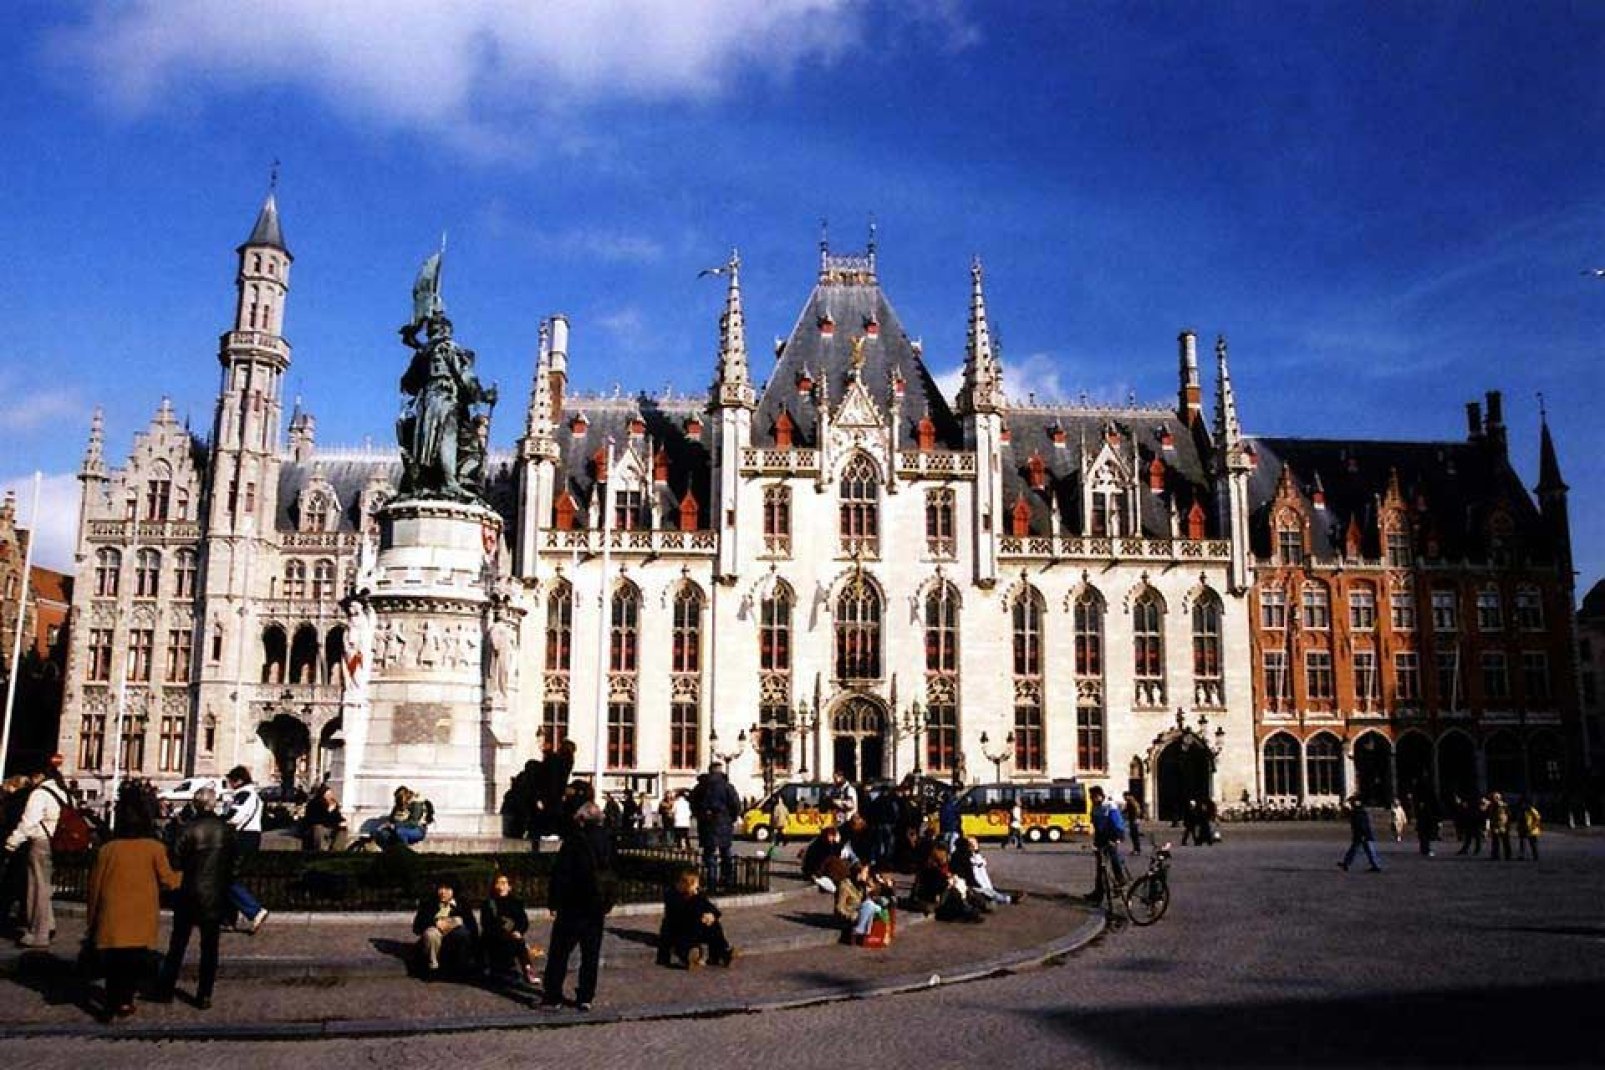 Cet édifice qui date de la fin du XIVème siècle est le plus ancien de Flandres. Son architecture caractéristique du style flamand impressionne les visiteurs.